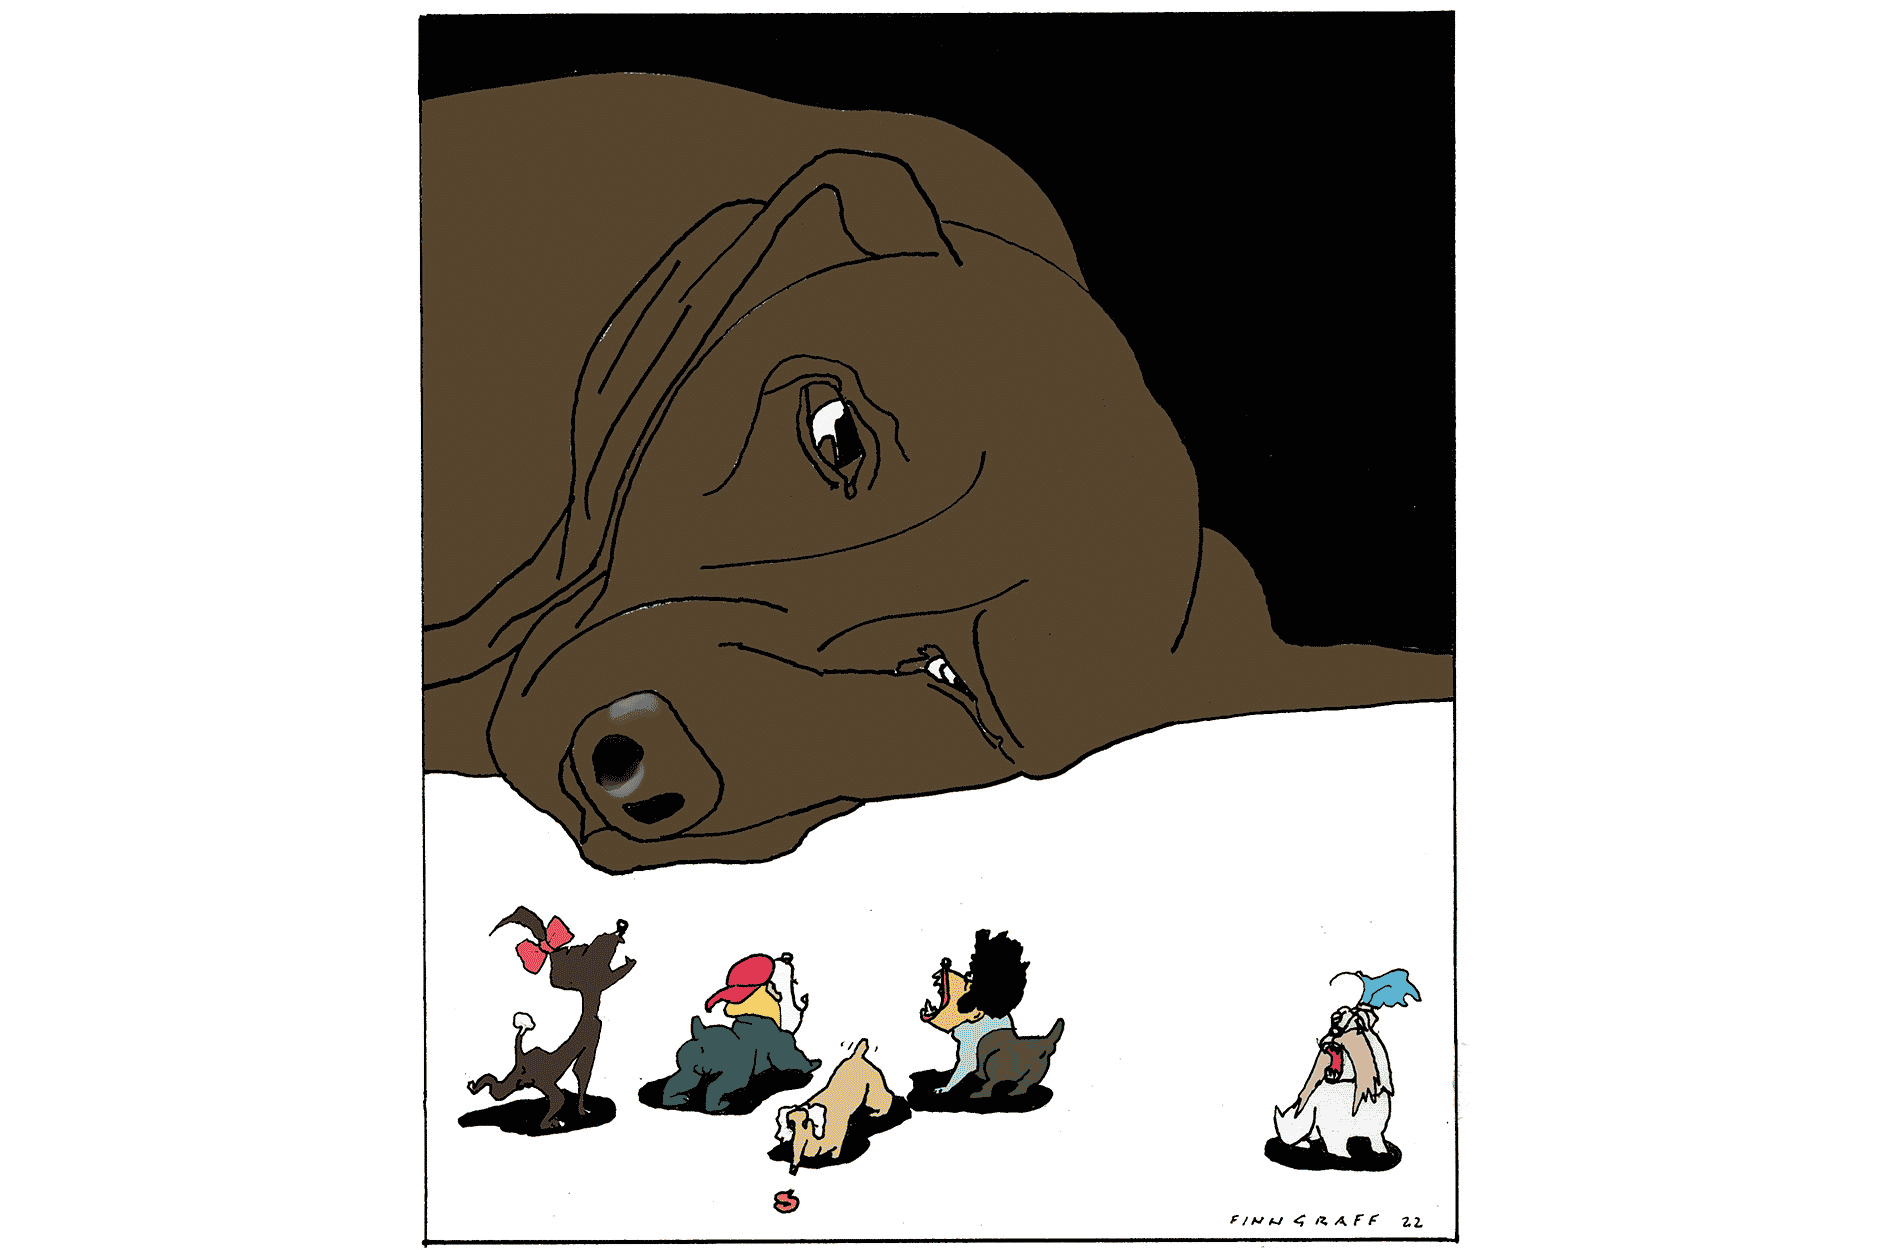 illustrasjon av hund som betrakter andre hunder